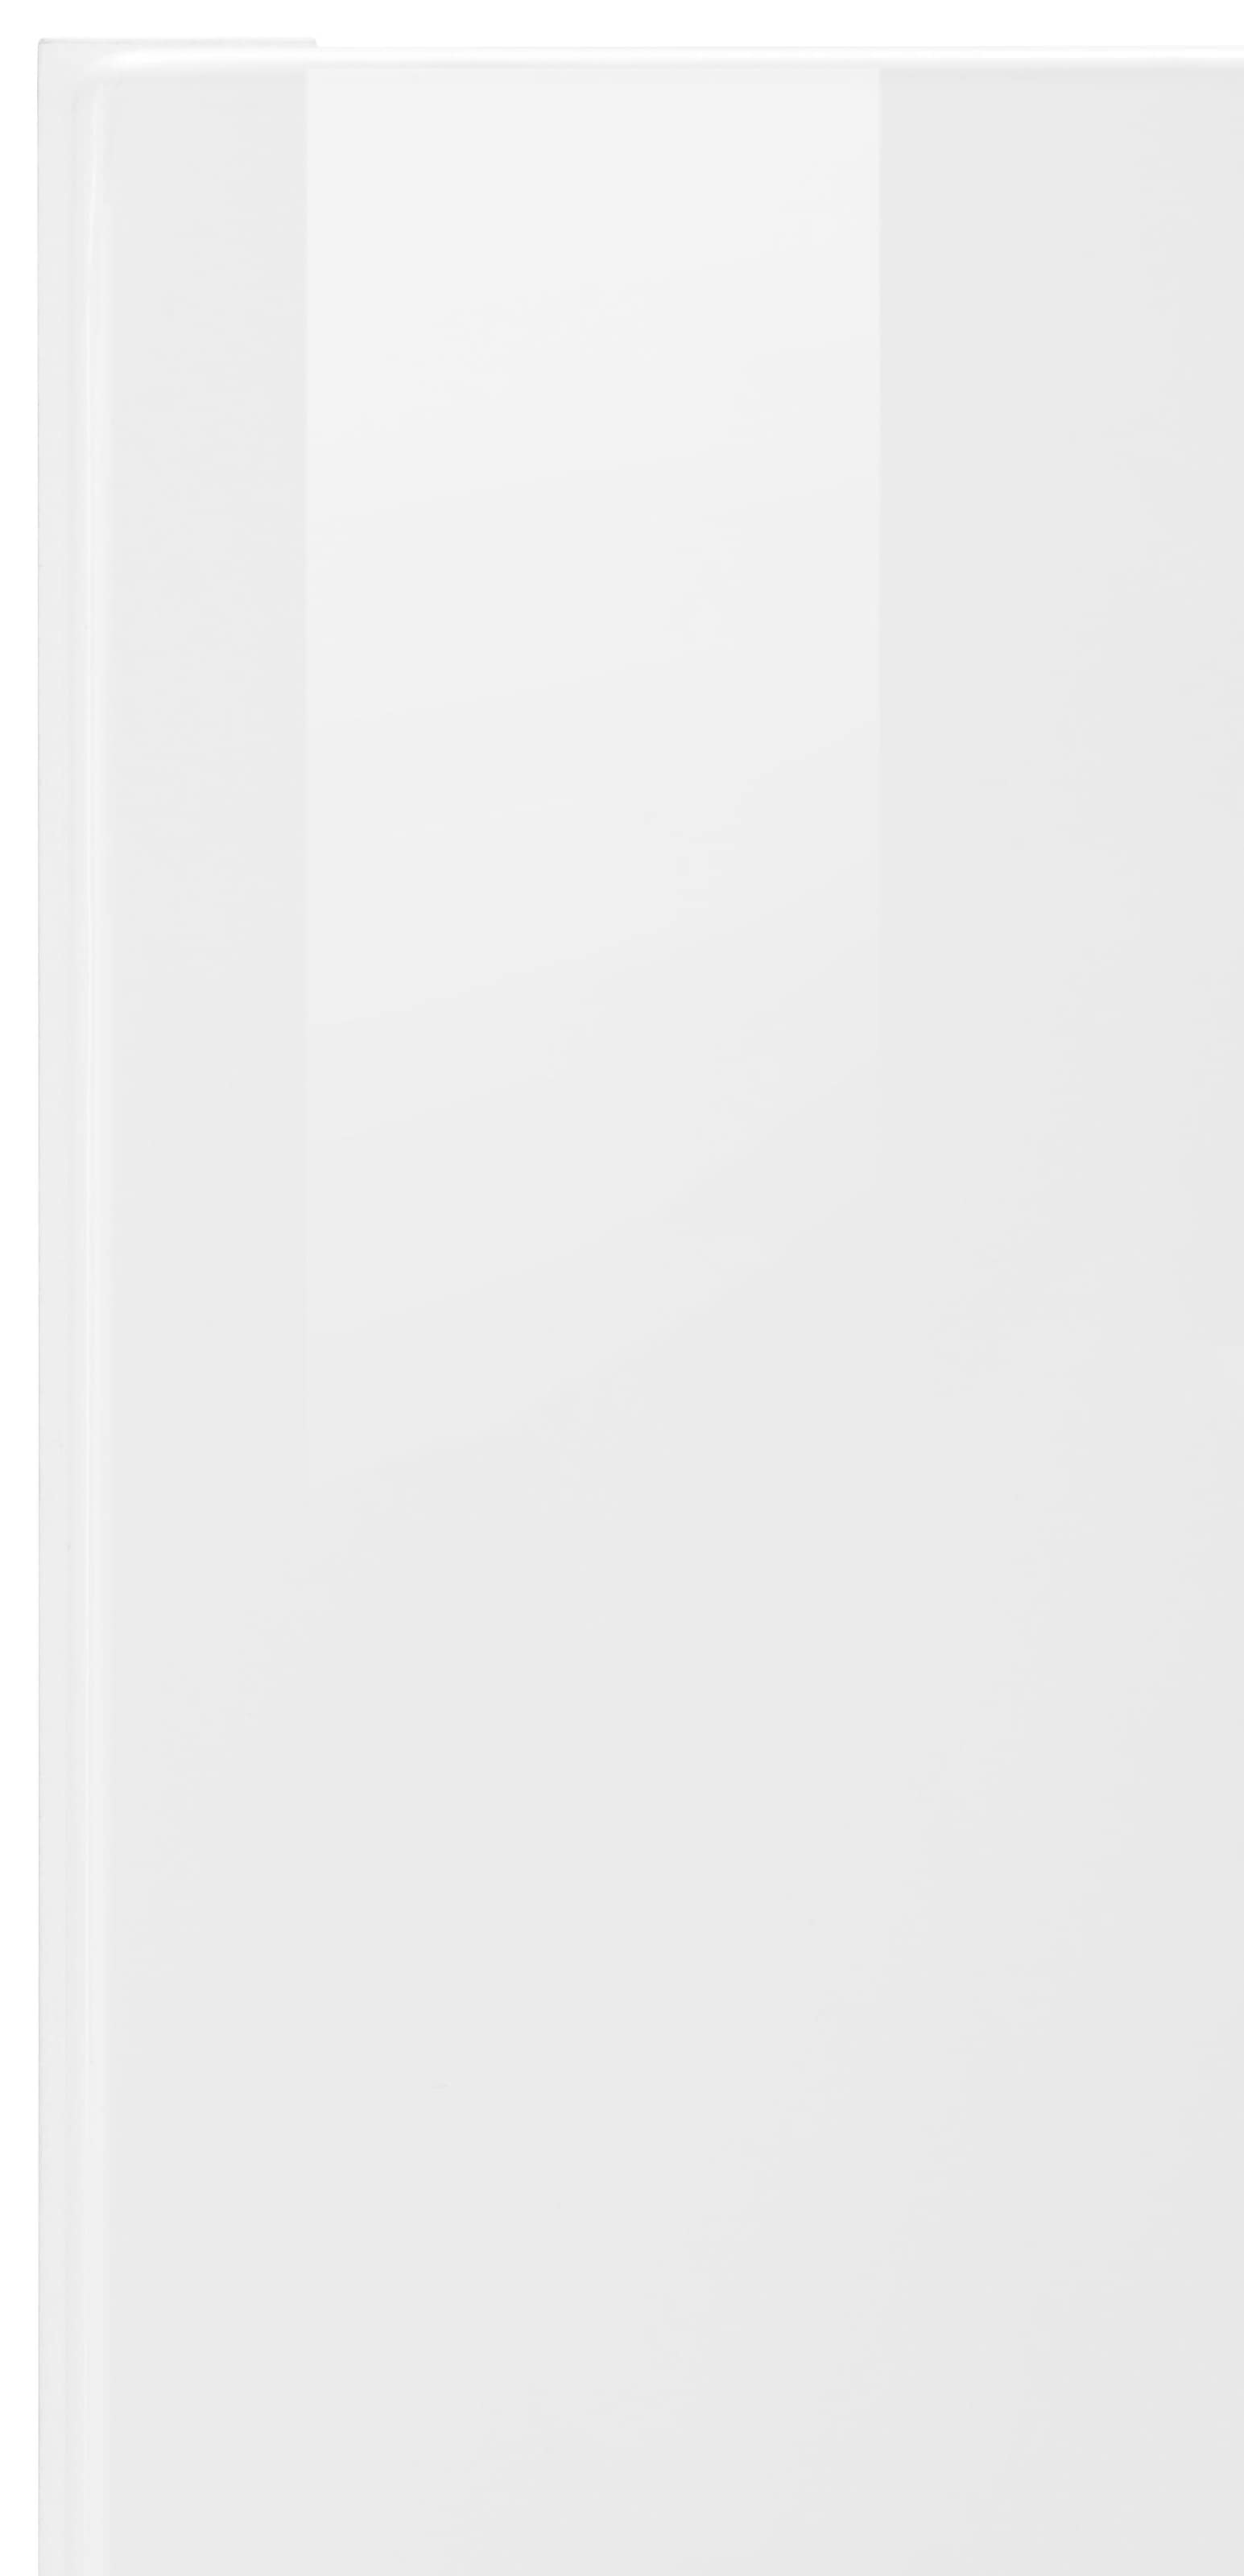 HELD MÖBEL Klapphängeschrank »Tulsa«, 110 cm breit, mit 1 Klappe, schwarzer Metallgriff, MDF Front